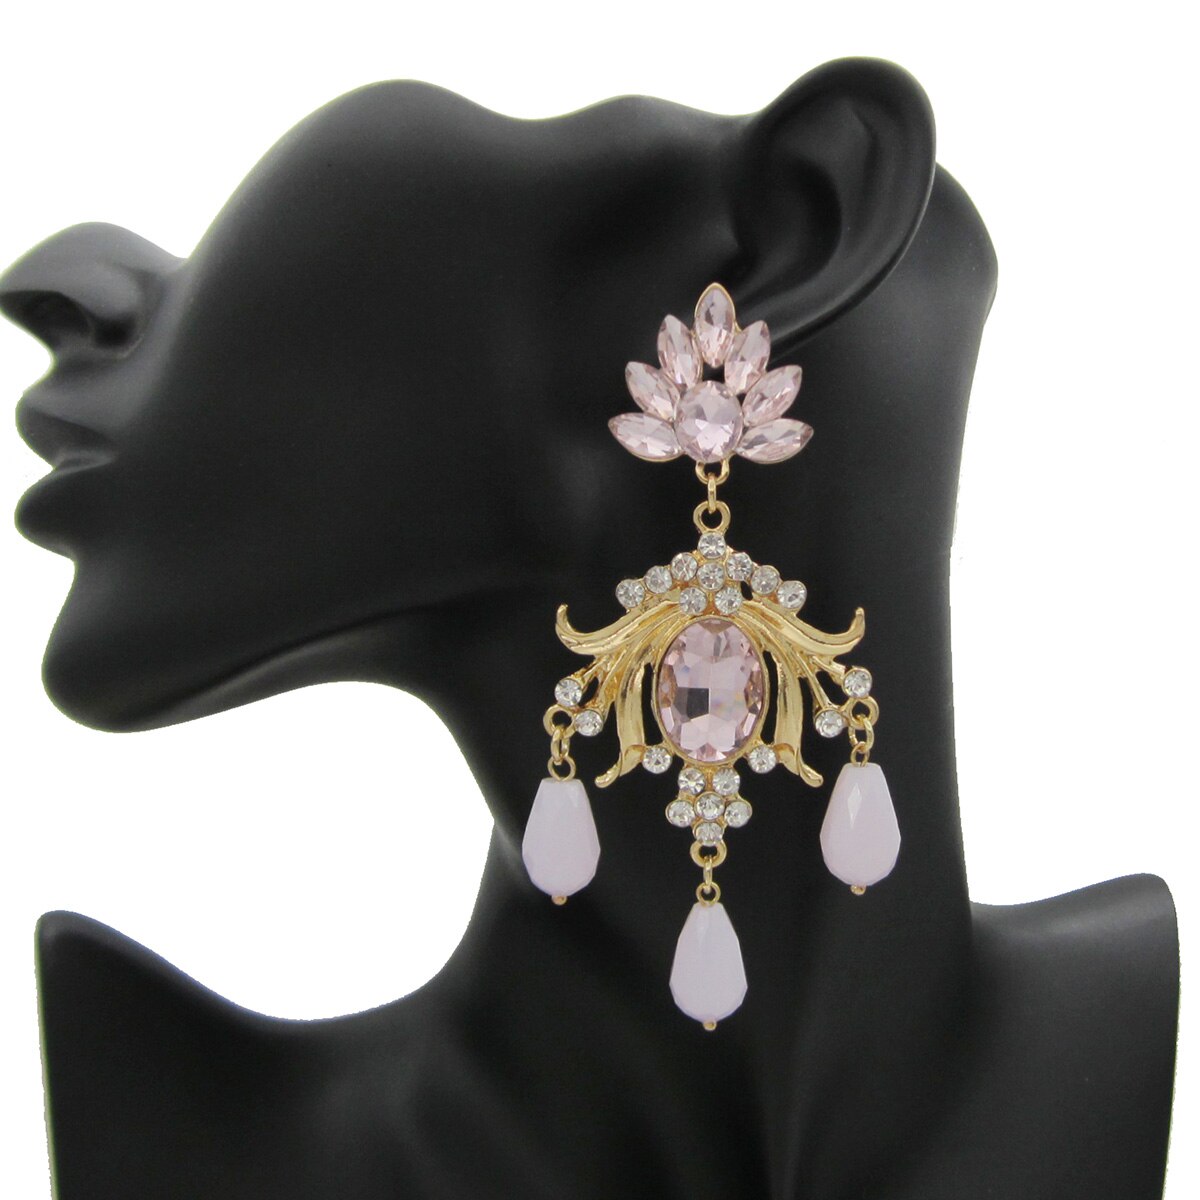 New Shiny Rhinestone Drop Earrings For Women Long Crystal Water-Drop Tassle Dangle Earring